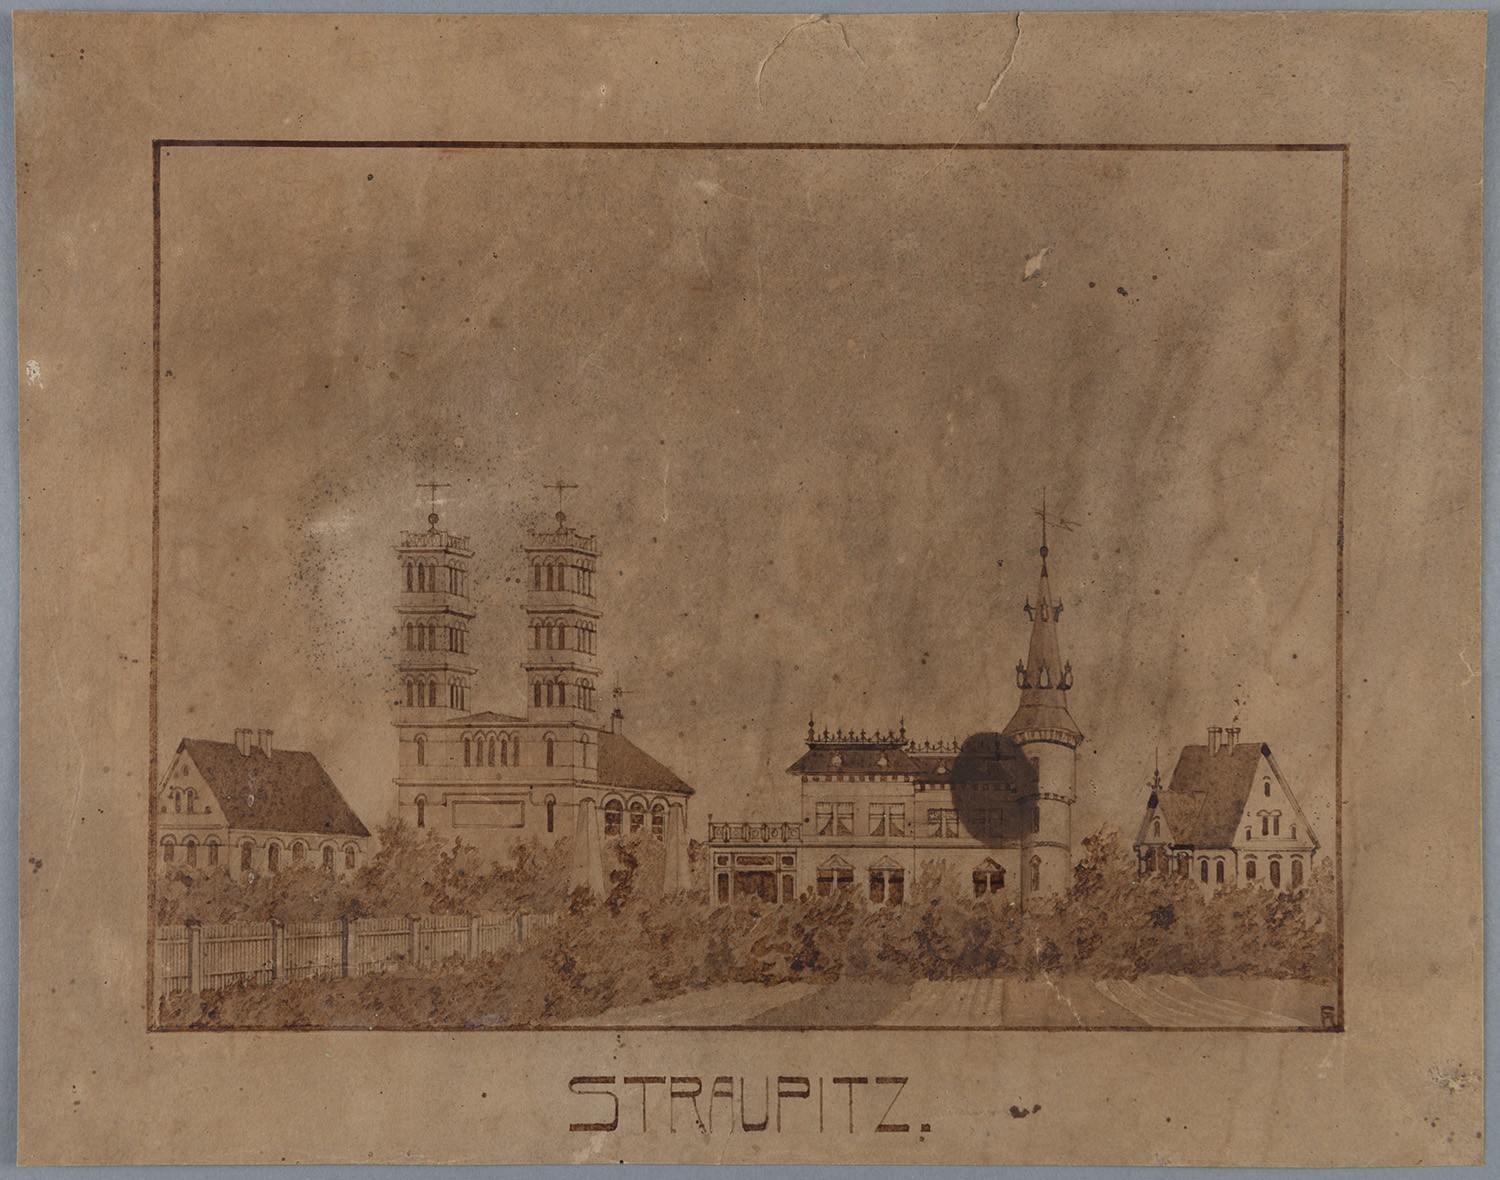 Straupitz (Kr. Lübben): Kirche und Villa (Landesgeschichtliche Vereinigung für die Mark Brandenburg e.V., Archiv CC BY)